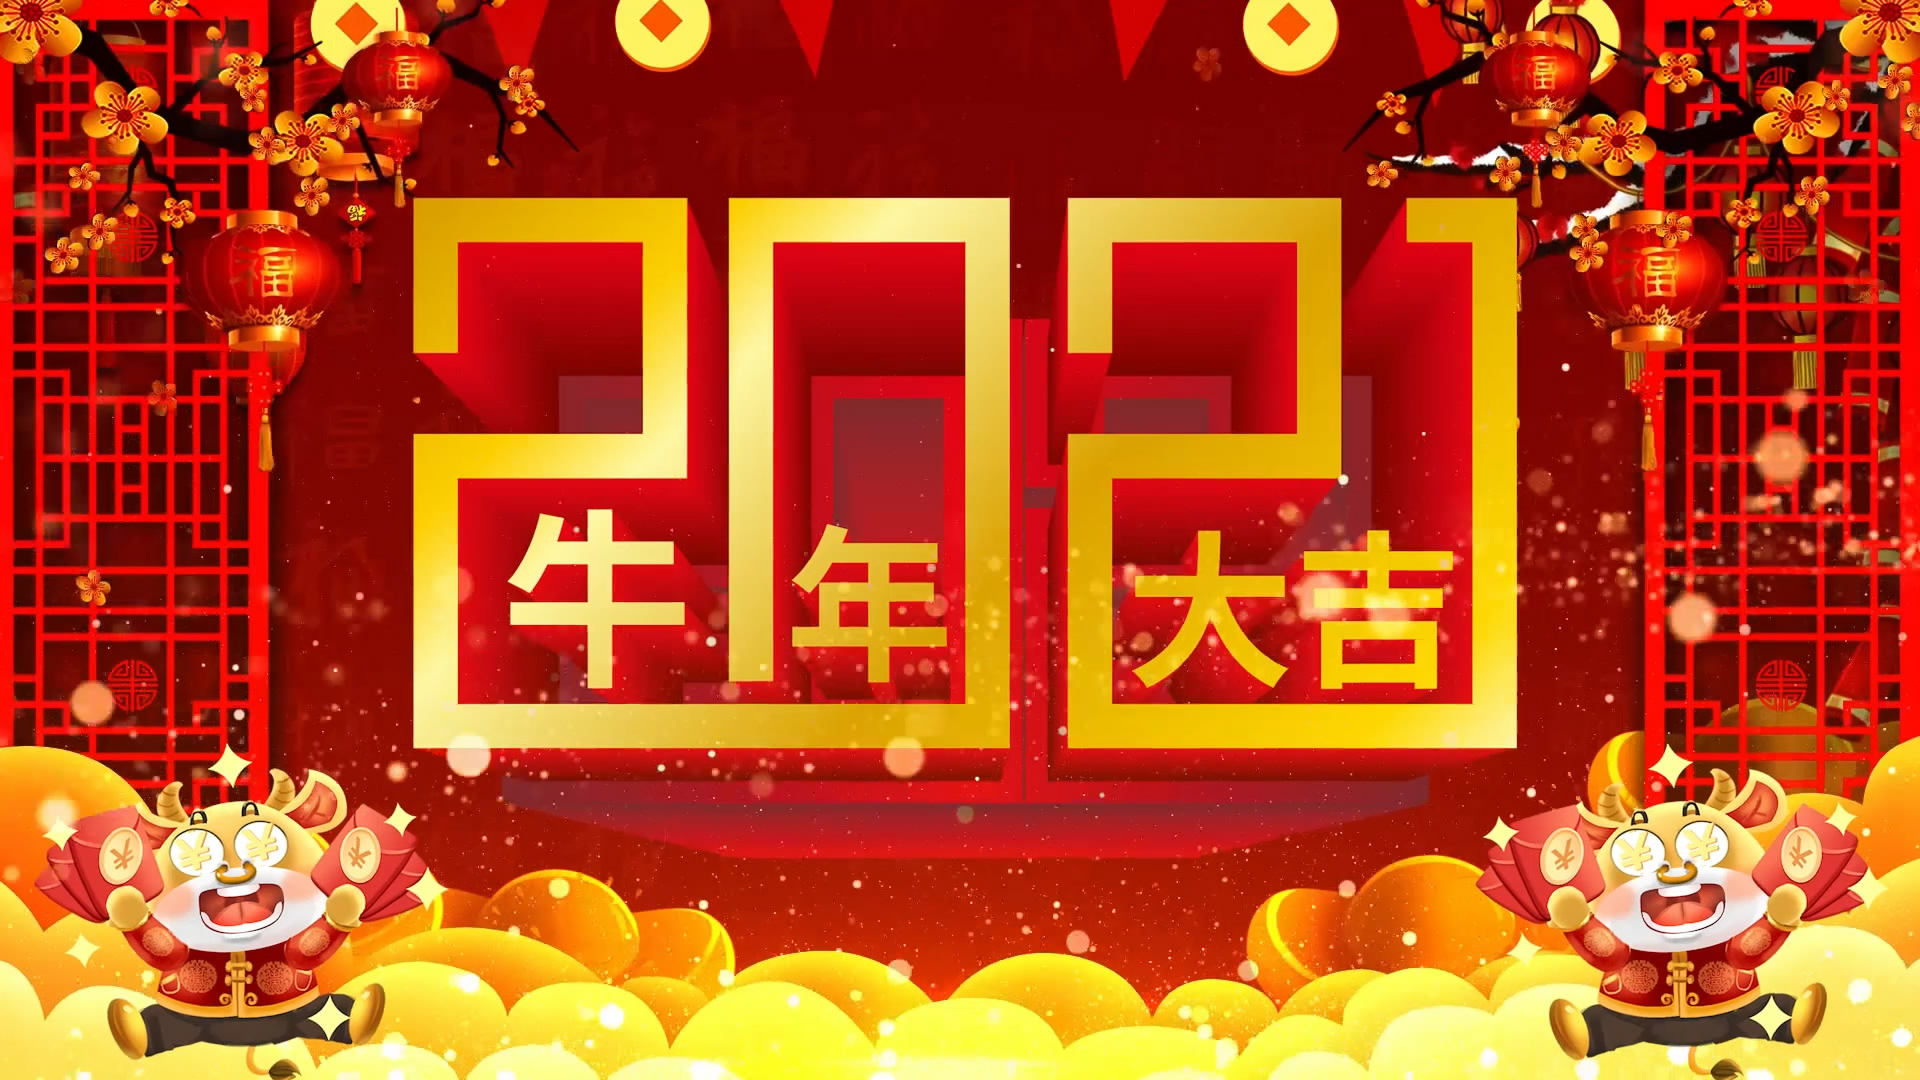 2021牛年大吉金元宝梅花灯笼红色背景金色汉字倒计时恭贺新春春节除夕